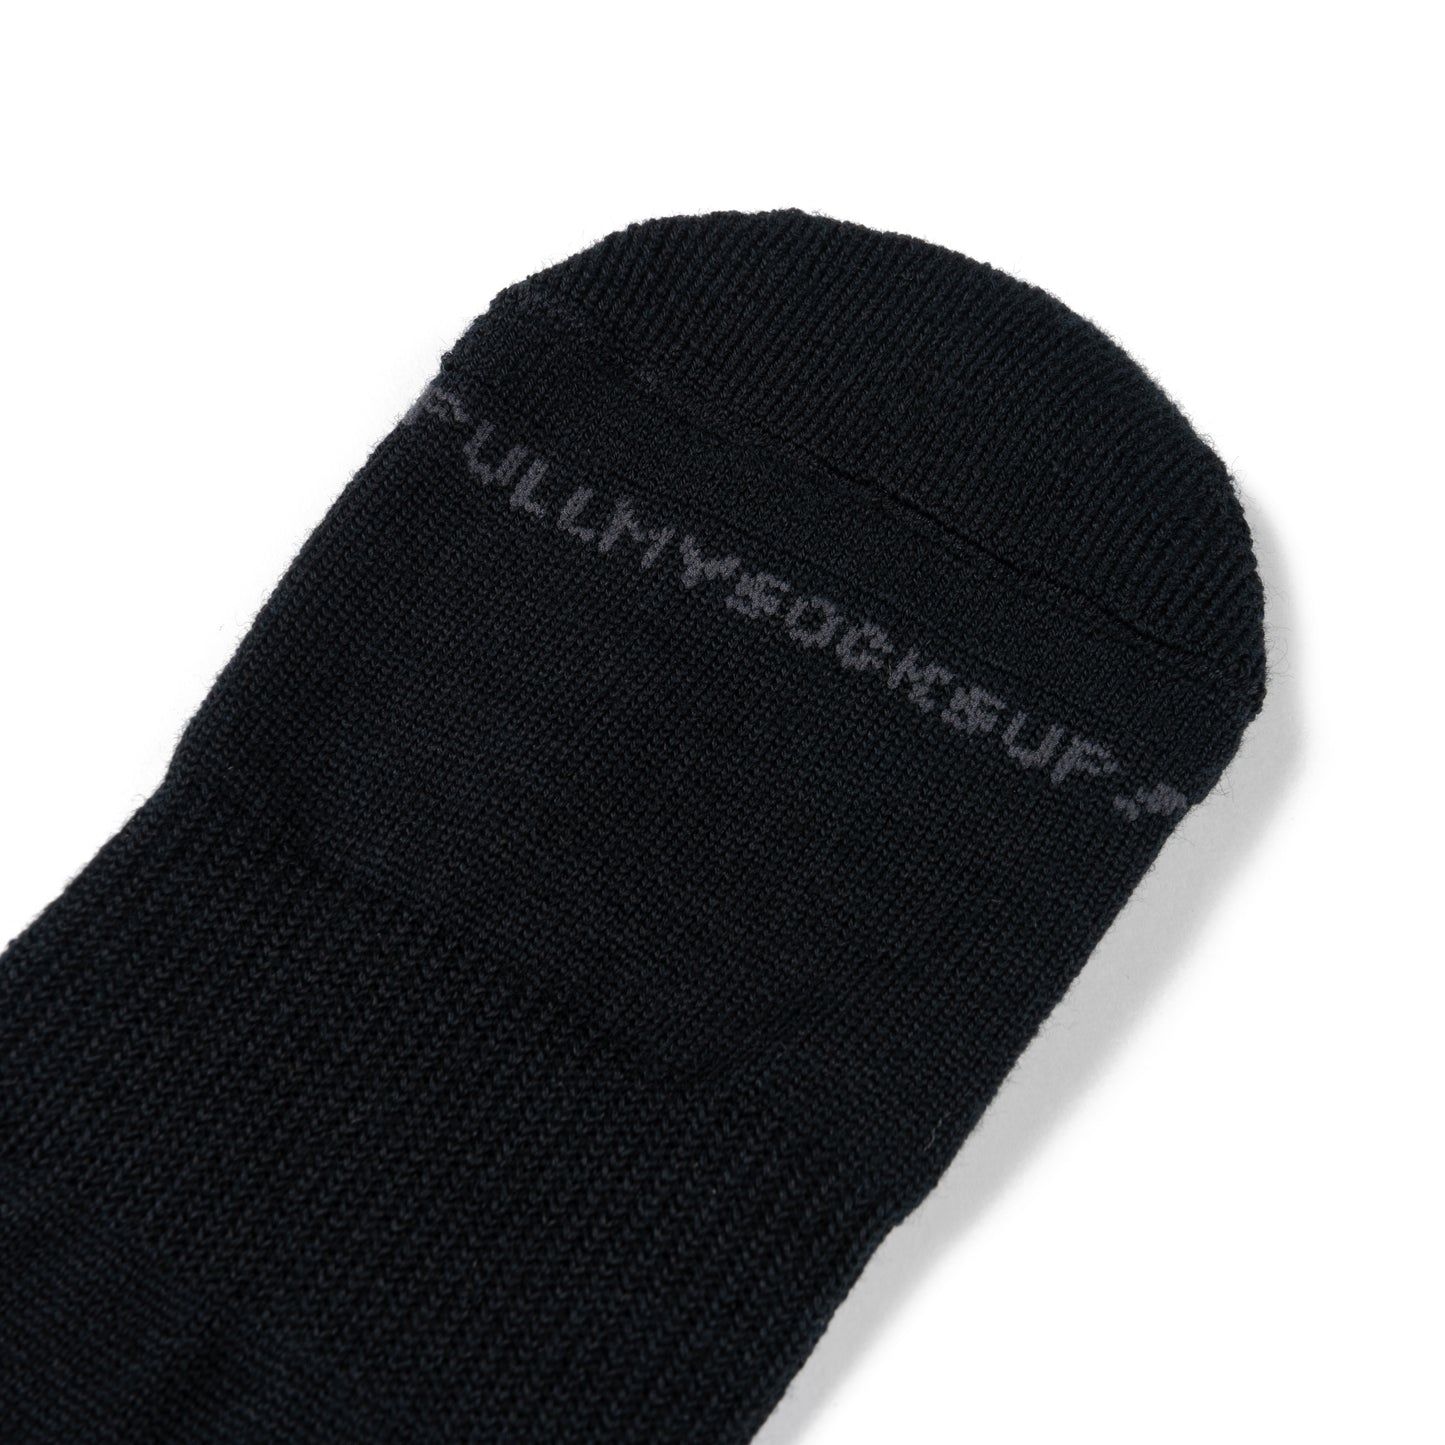 Winiche & Co. × Helinox Wool Slouch Socks - Black / Dark Gray